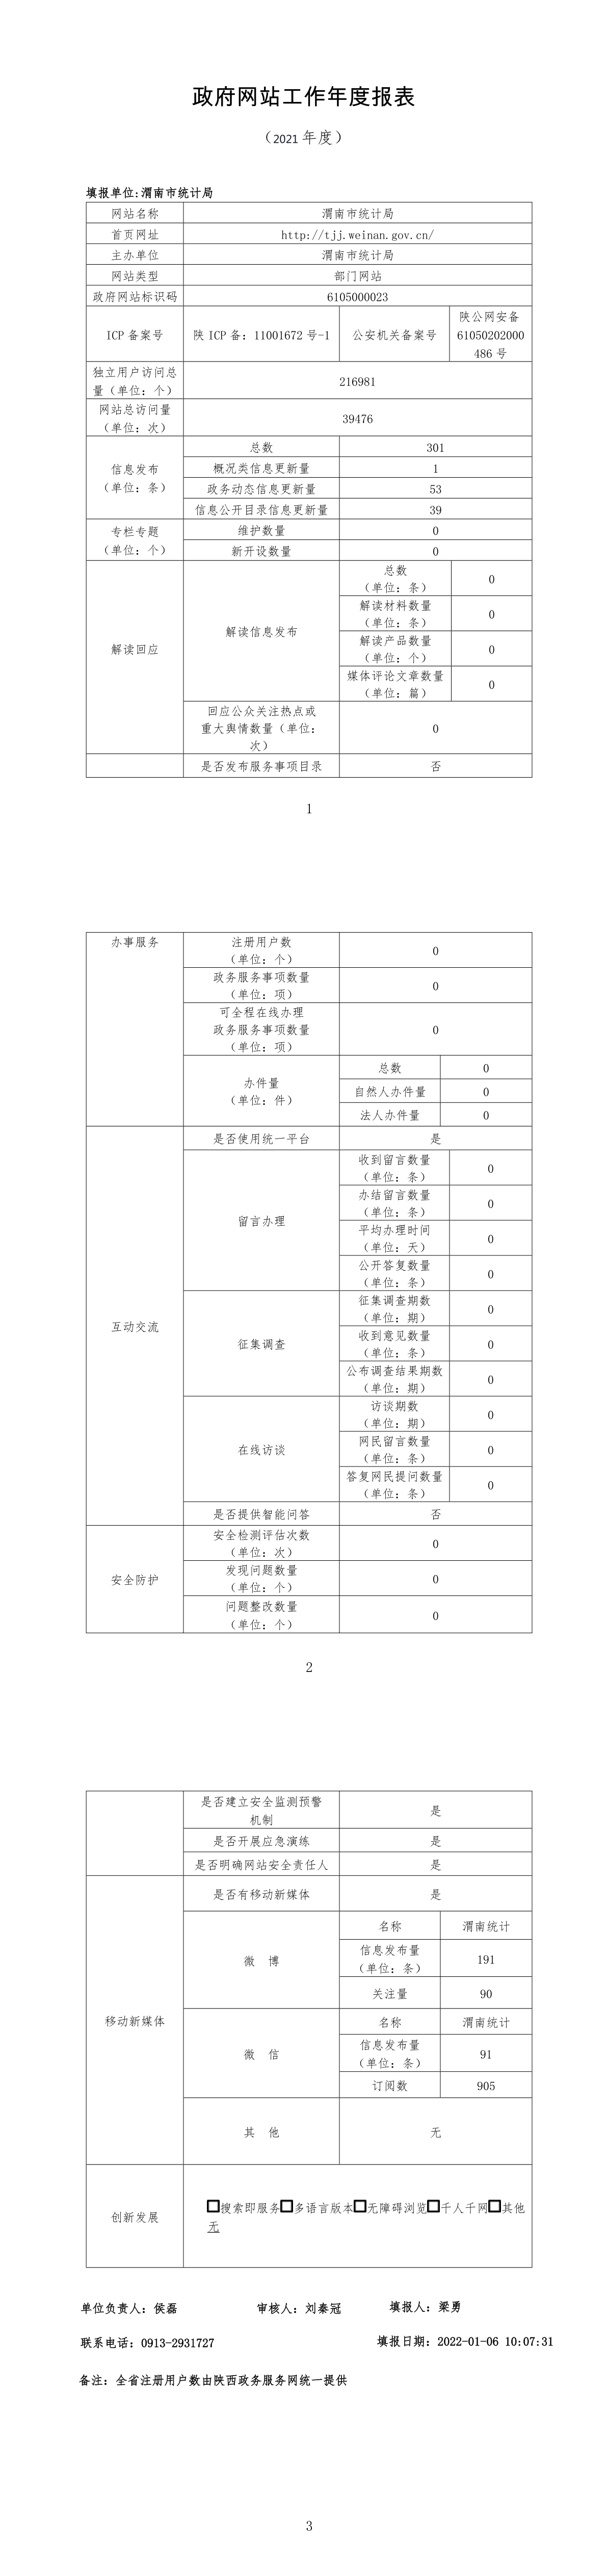 渭南市统计网站2021年度报表